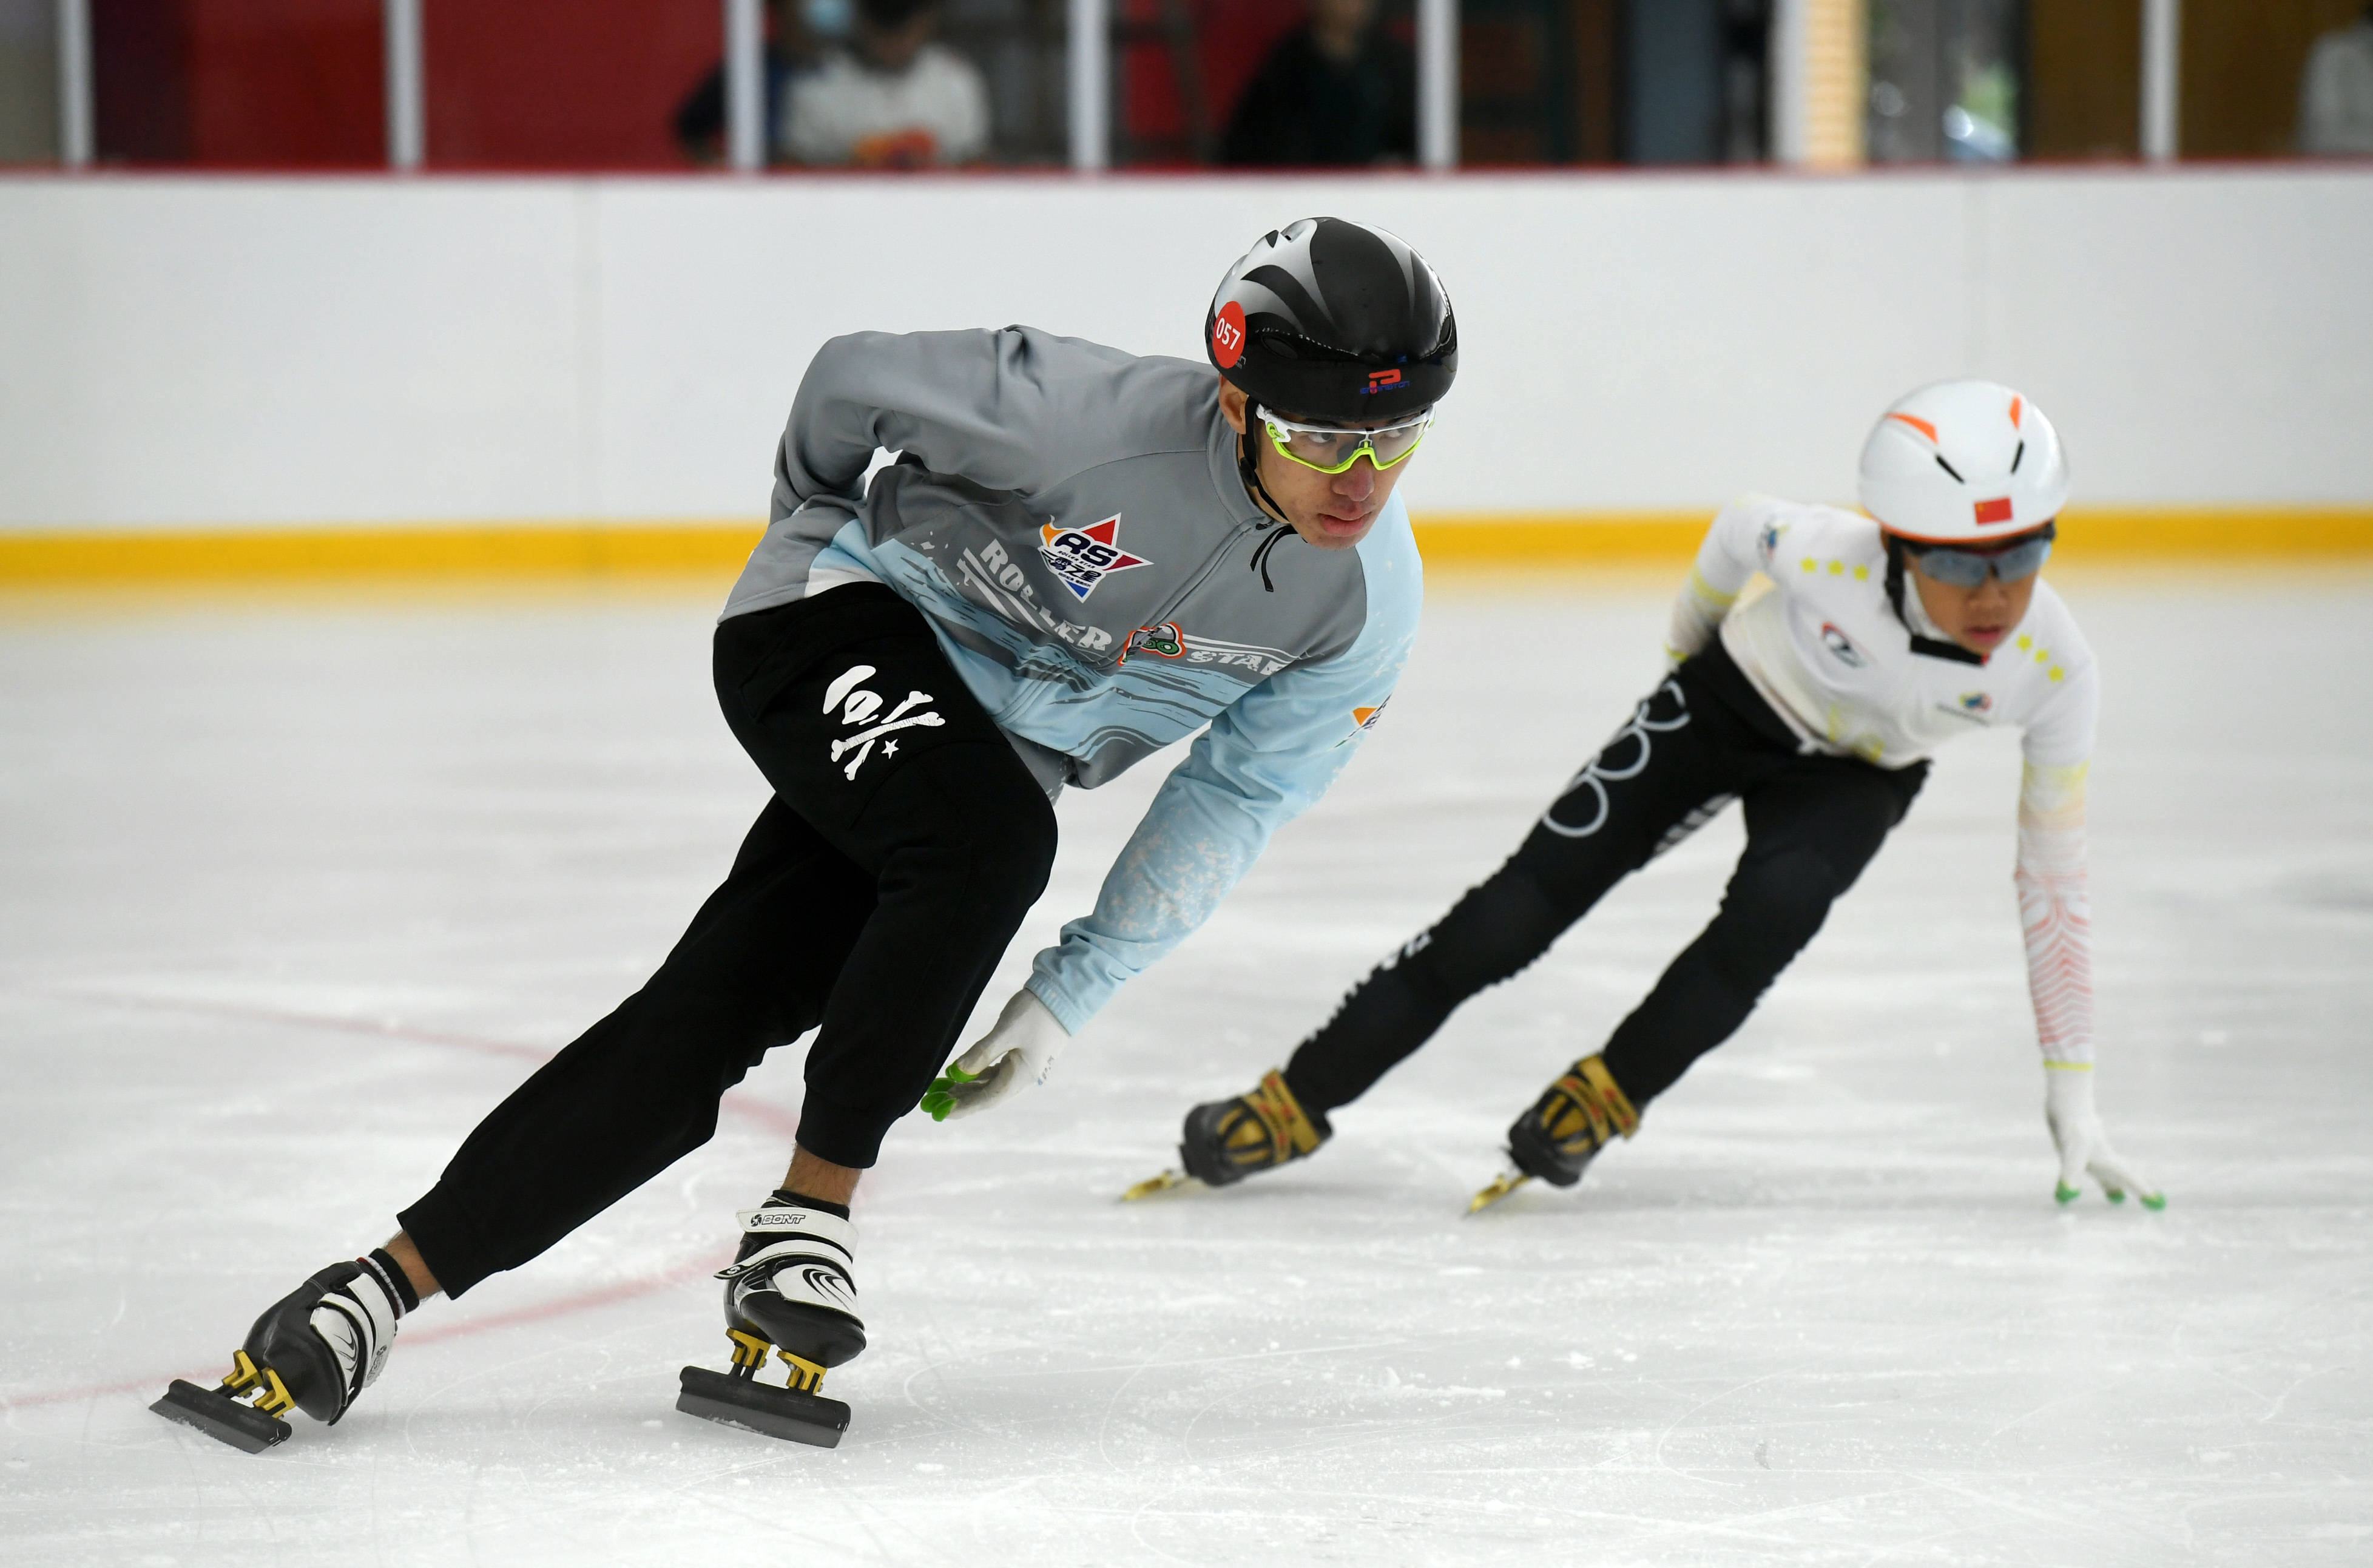 8月8日,在天津奥林匹克中心滑冰馆,刘振熙(左)表演速度滑冰.